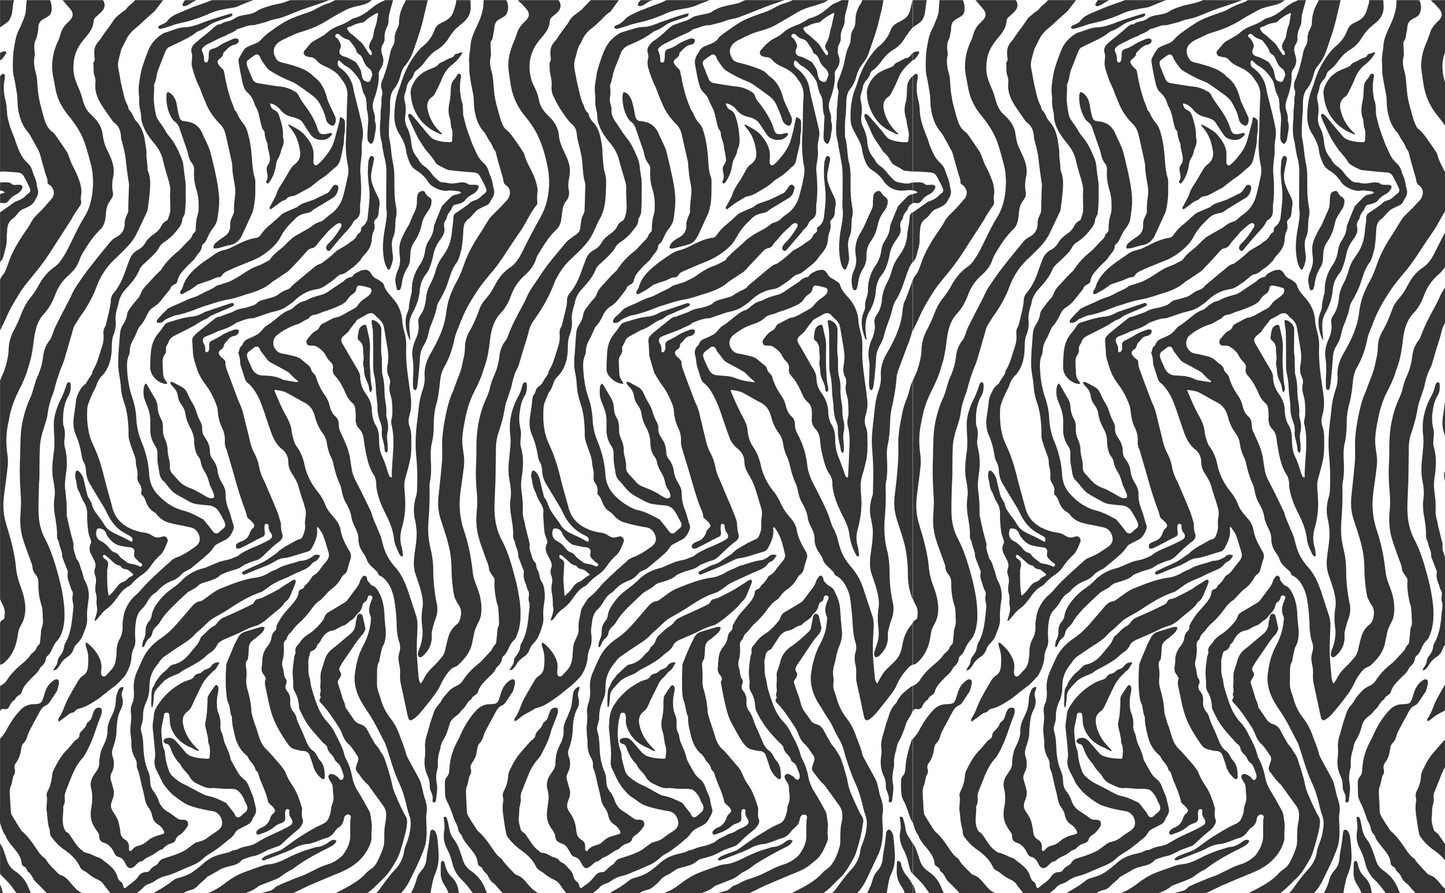 FANCY AF WOOD Zebra